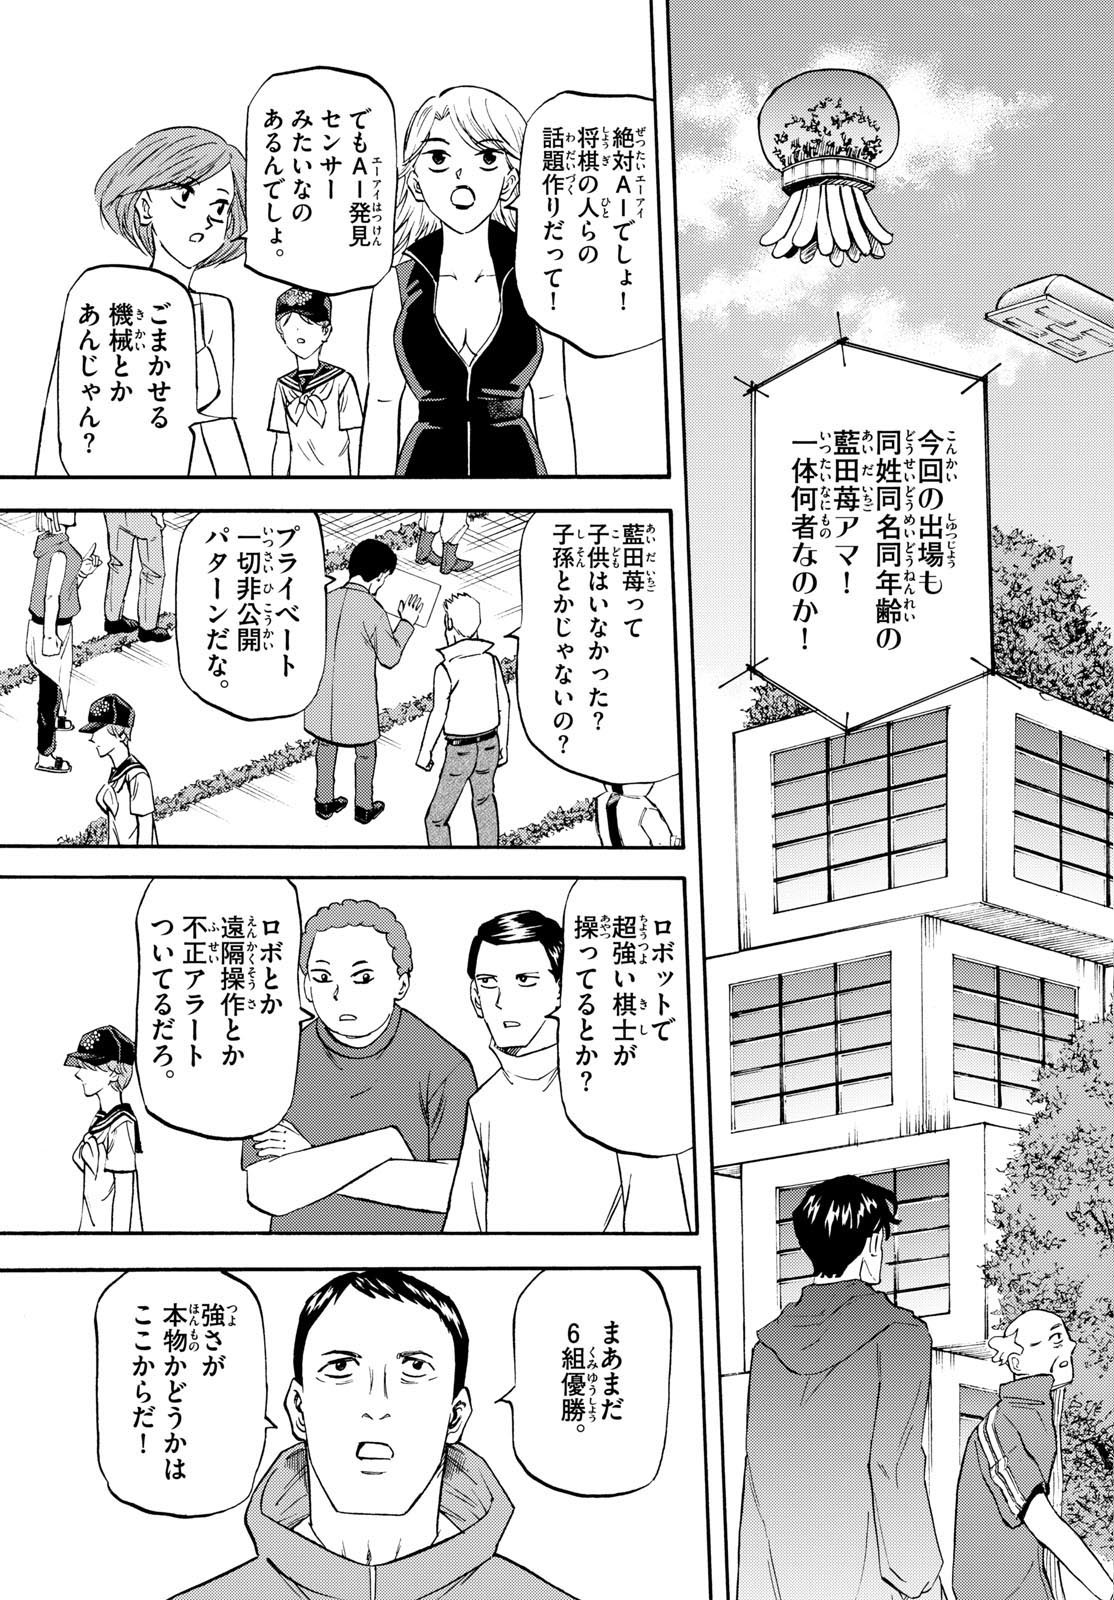 Ryu-to-Ichigo - Chapter 195 - Page 3